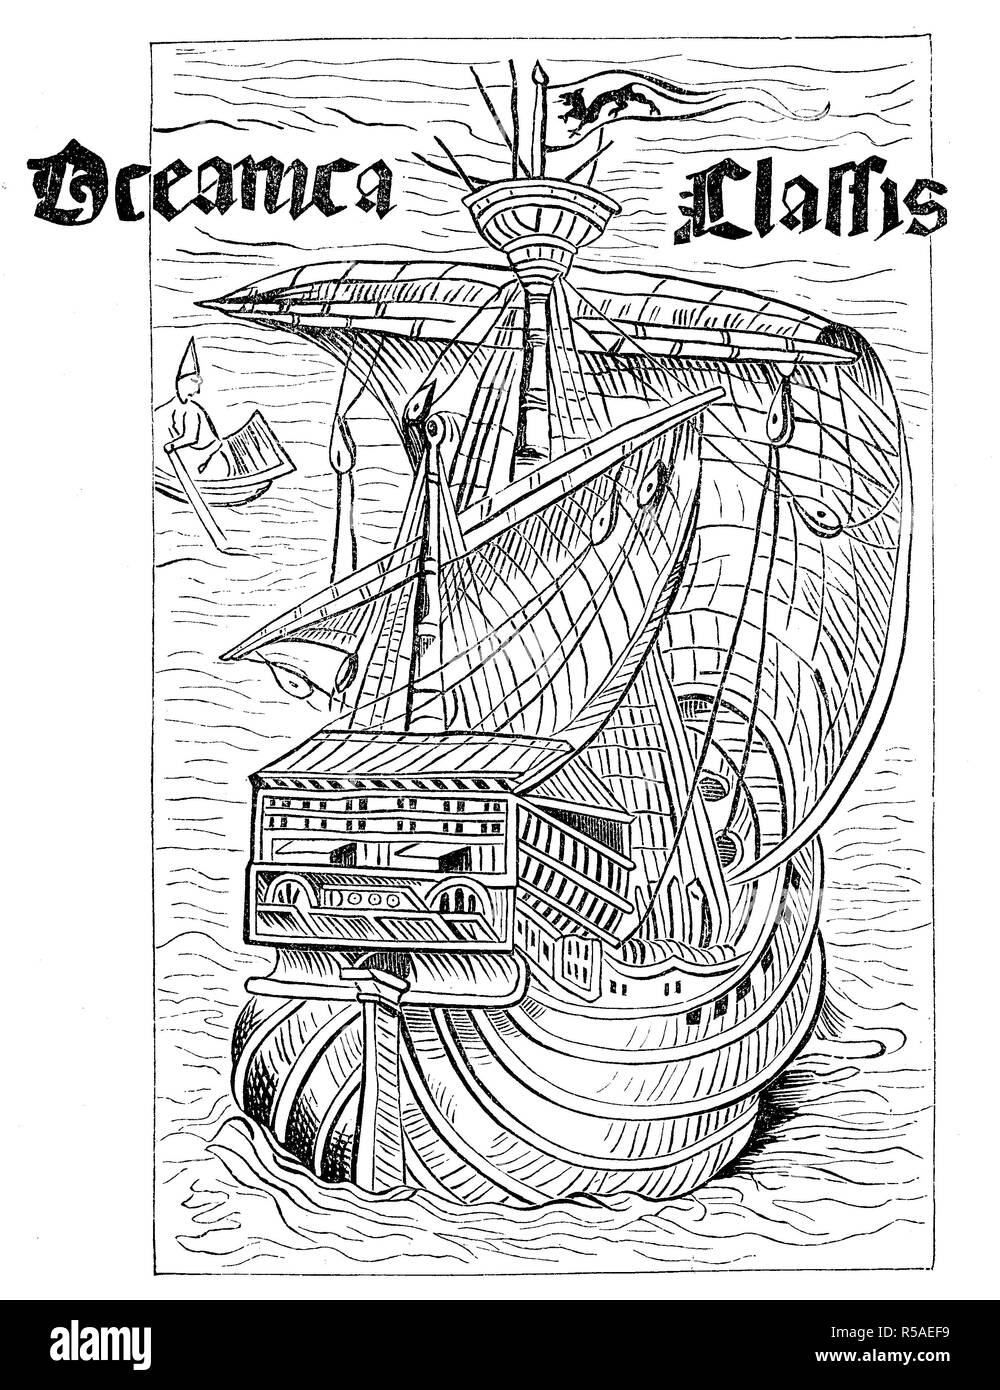 Dessin d'un navire espagnol de l'époque de la découverte de l'Amérique autour de 1492, woodcut, Espagne Banque D'Images